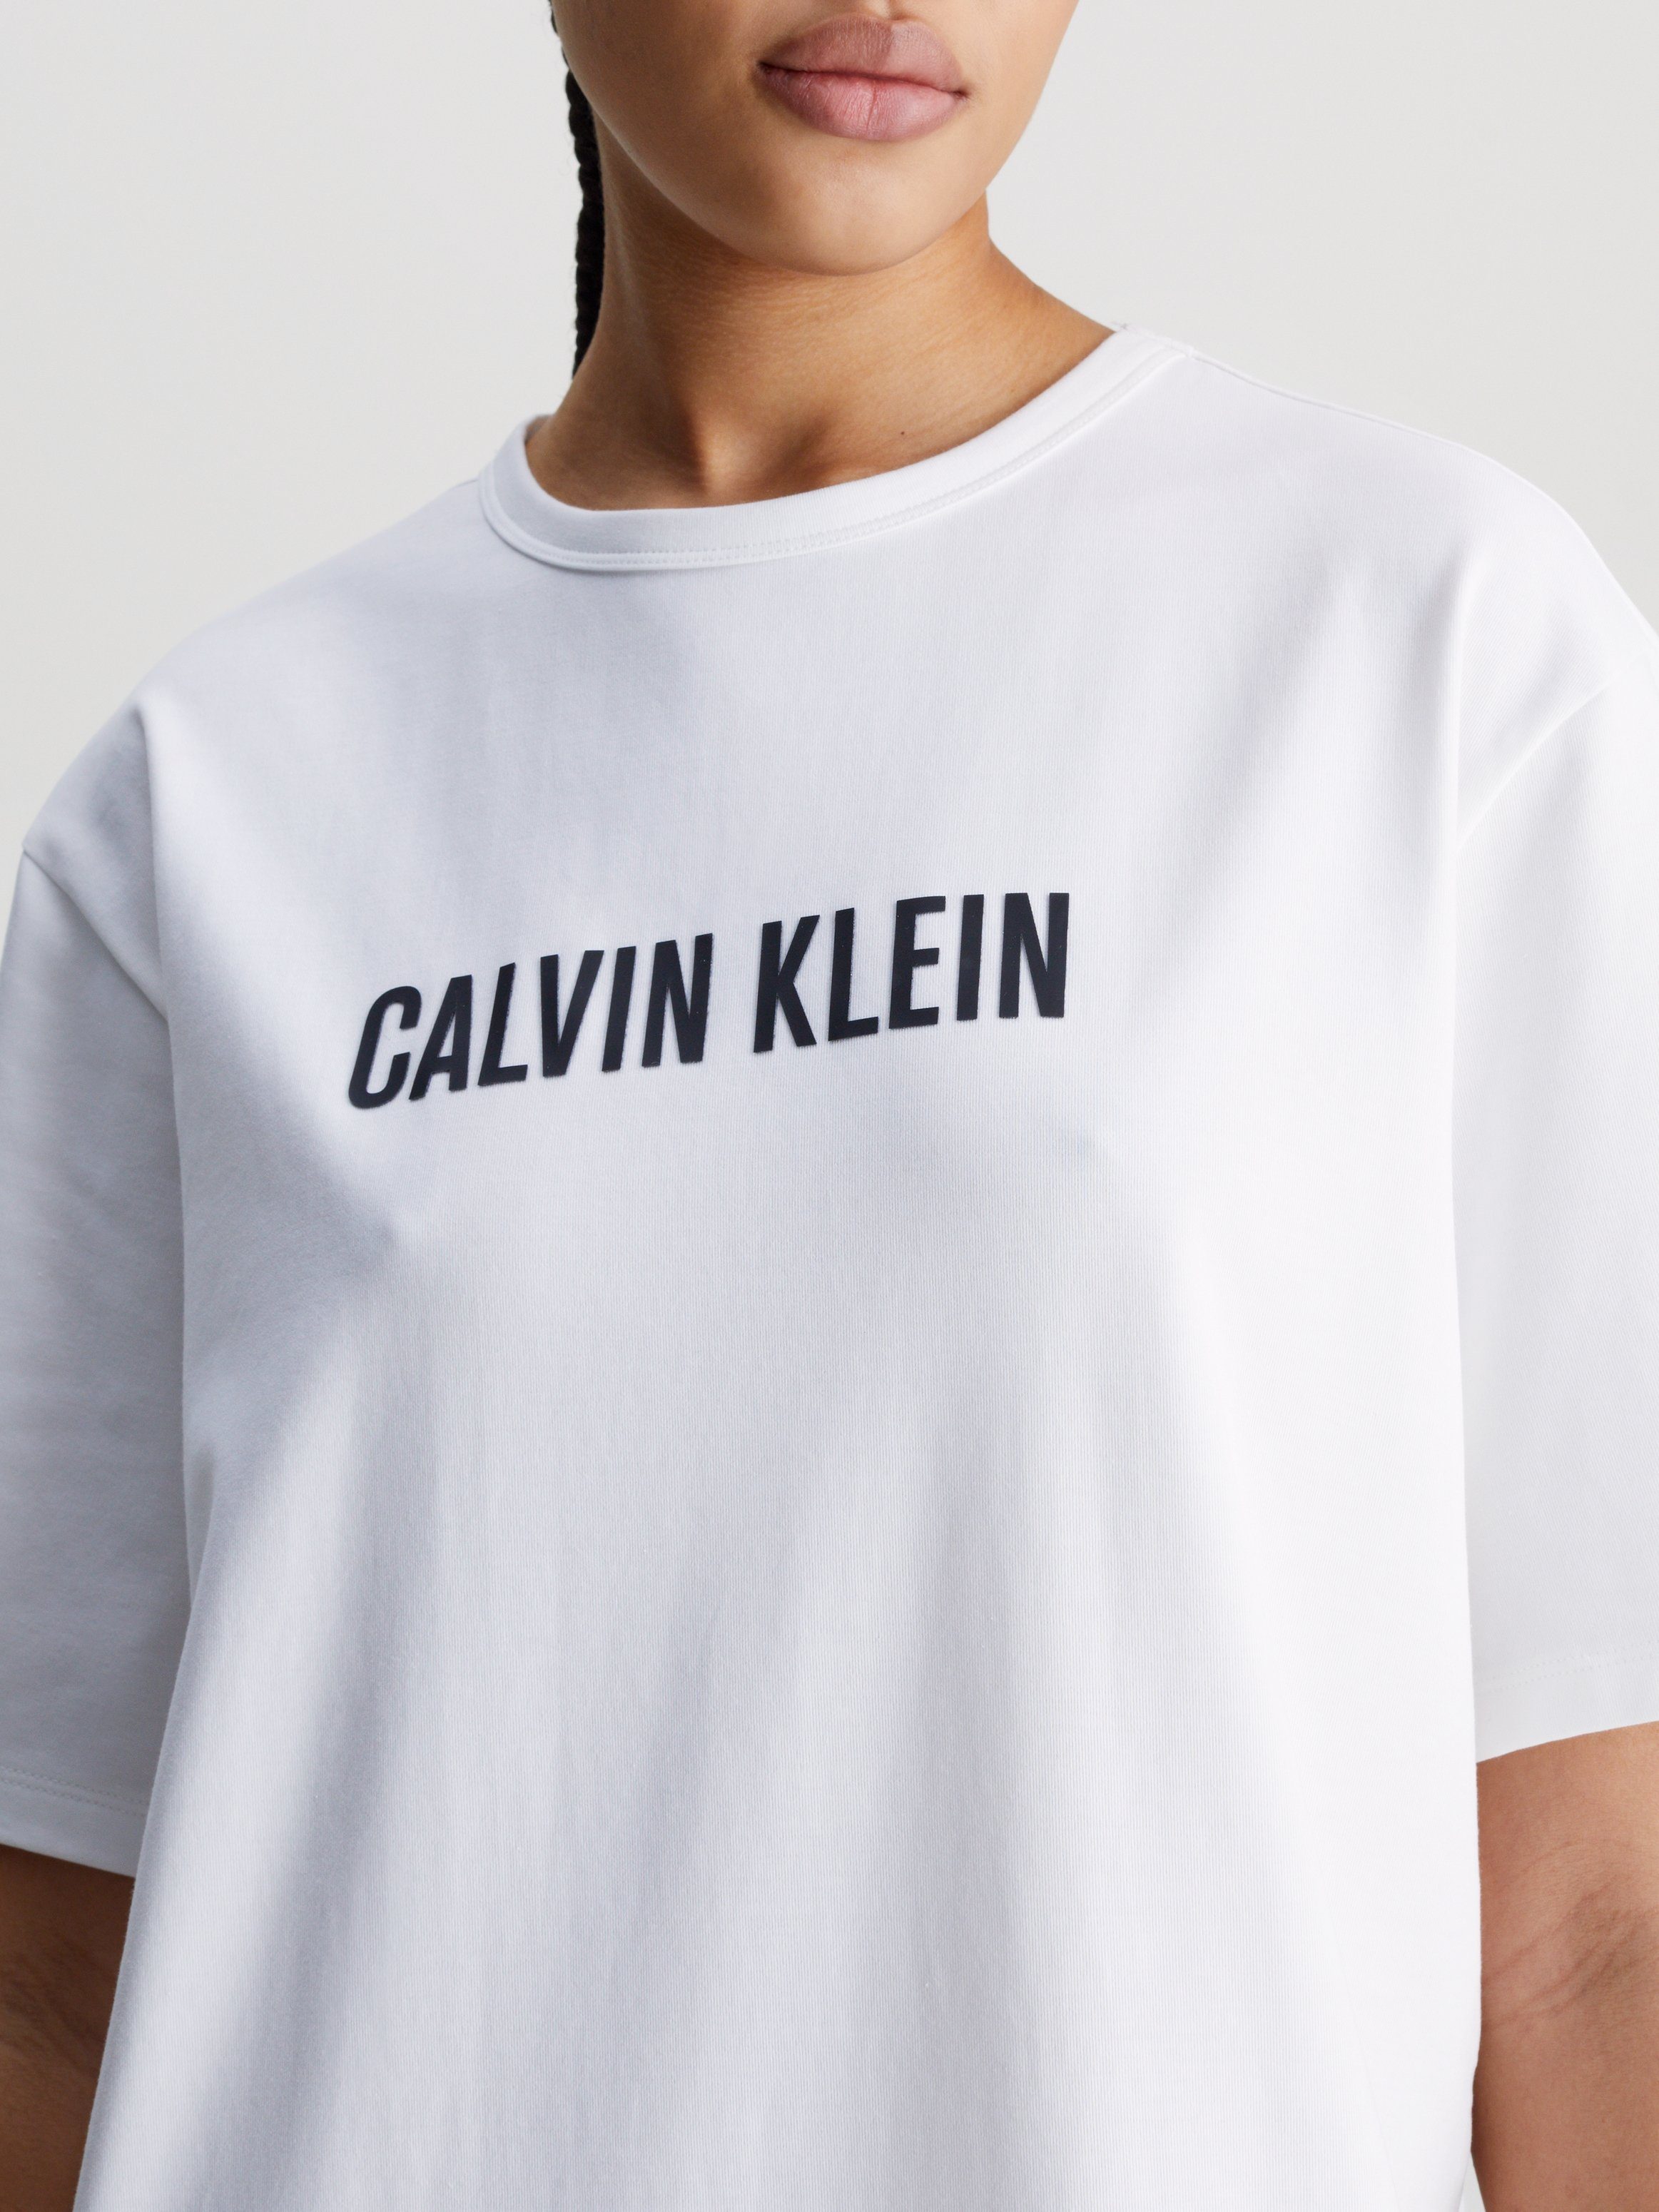 S/S Logoschriftzug NIGHTSHIRT der Klein Brust auf mit Nachthemd Calvin Underwear